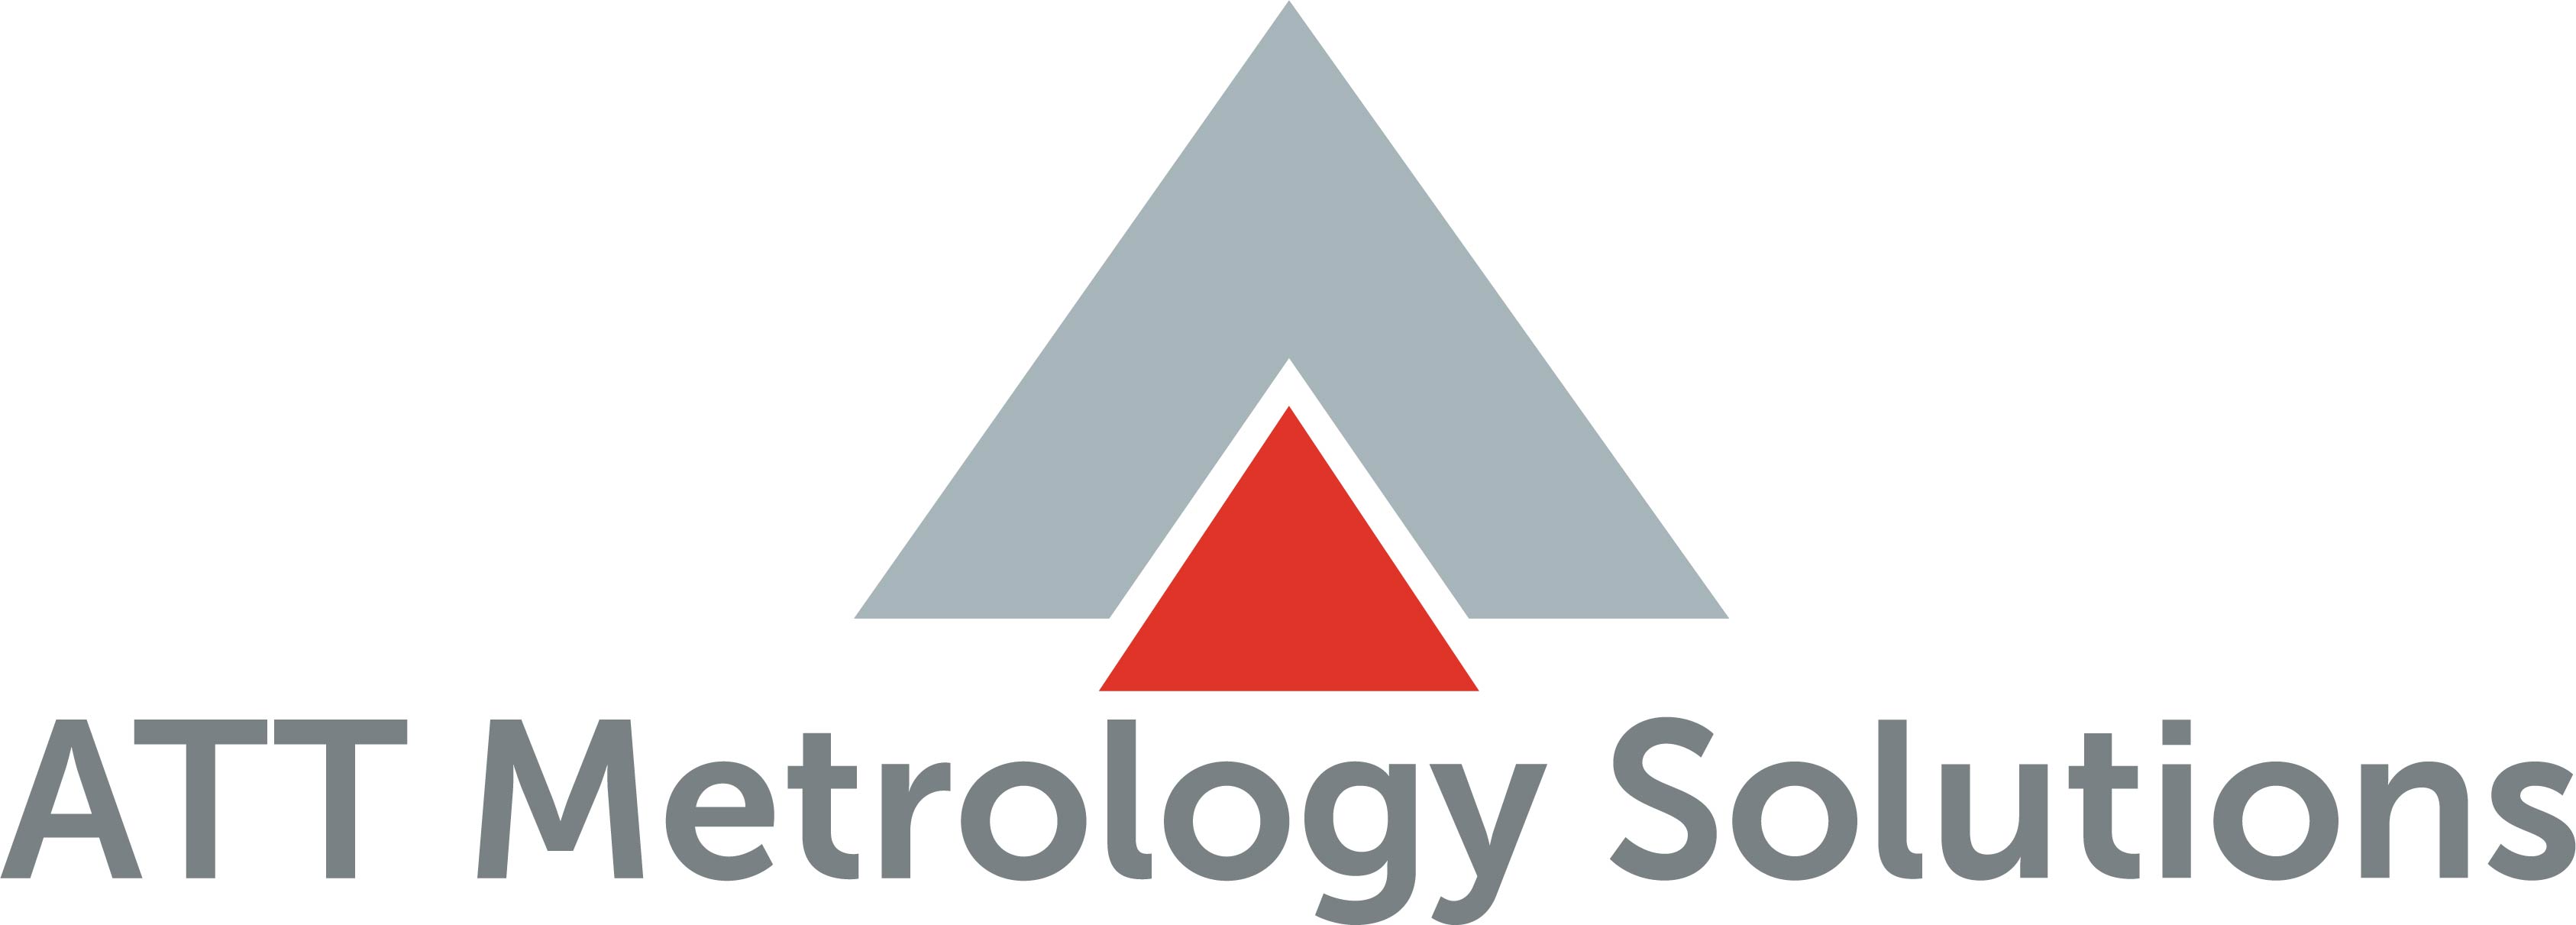 ATT Metrology Solutions